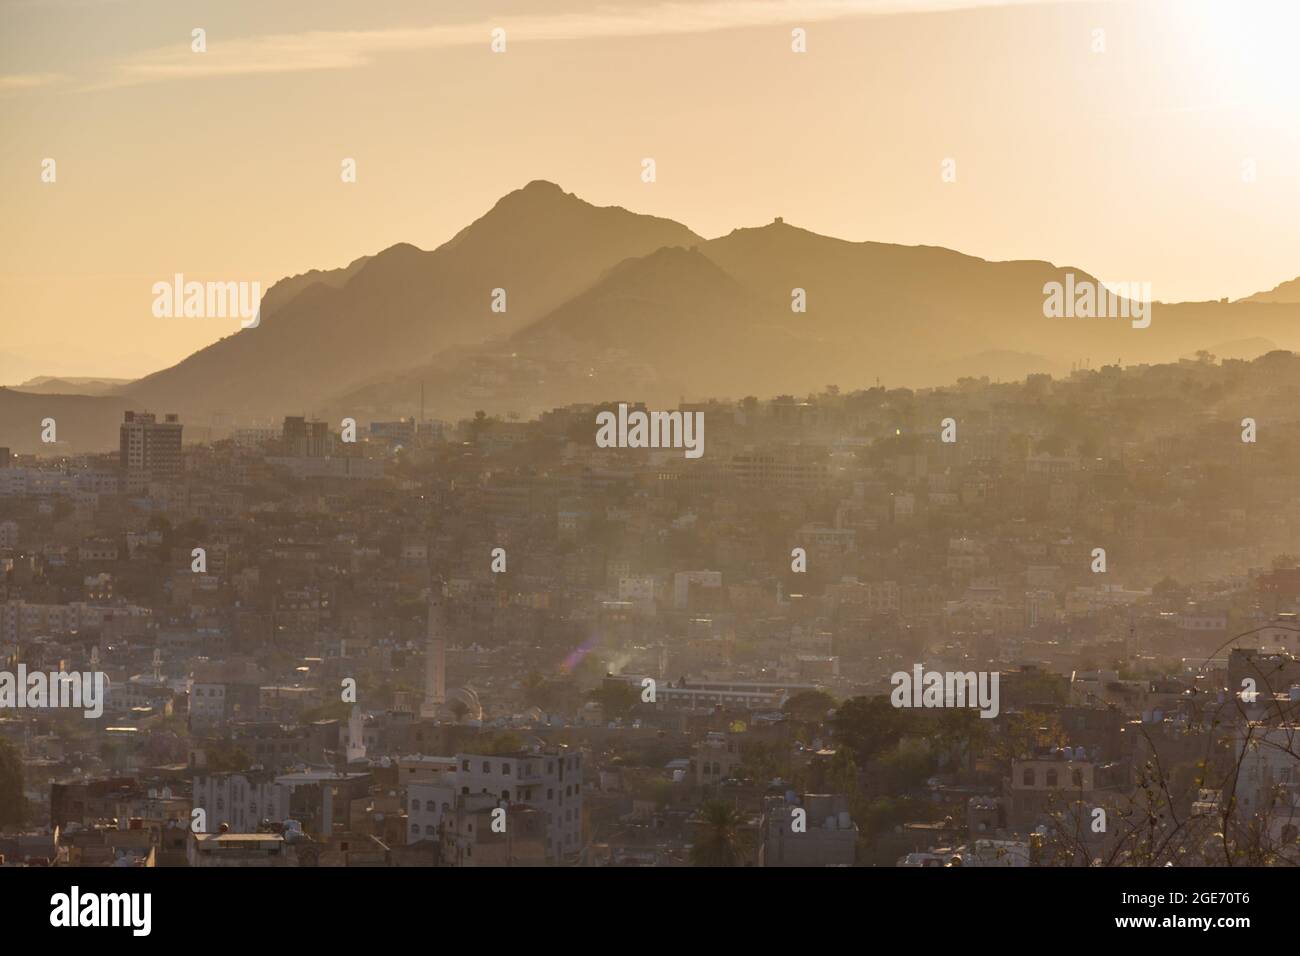 sonnenaufgang des historischen Schlosses 'Cairo' in Taiz Stadt, Jemen Landschaft. Stockfoto